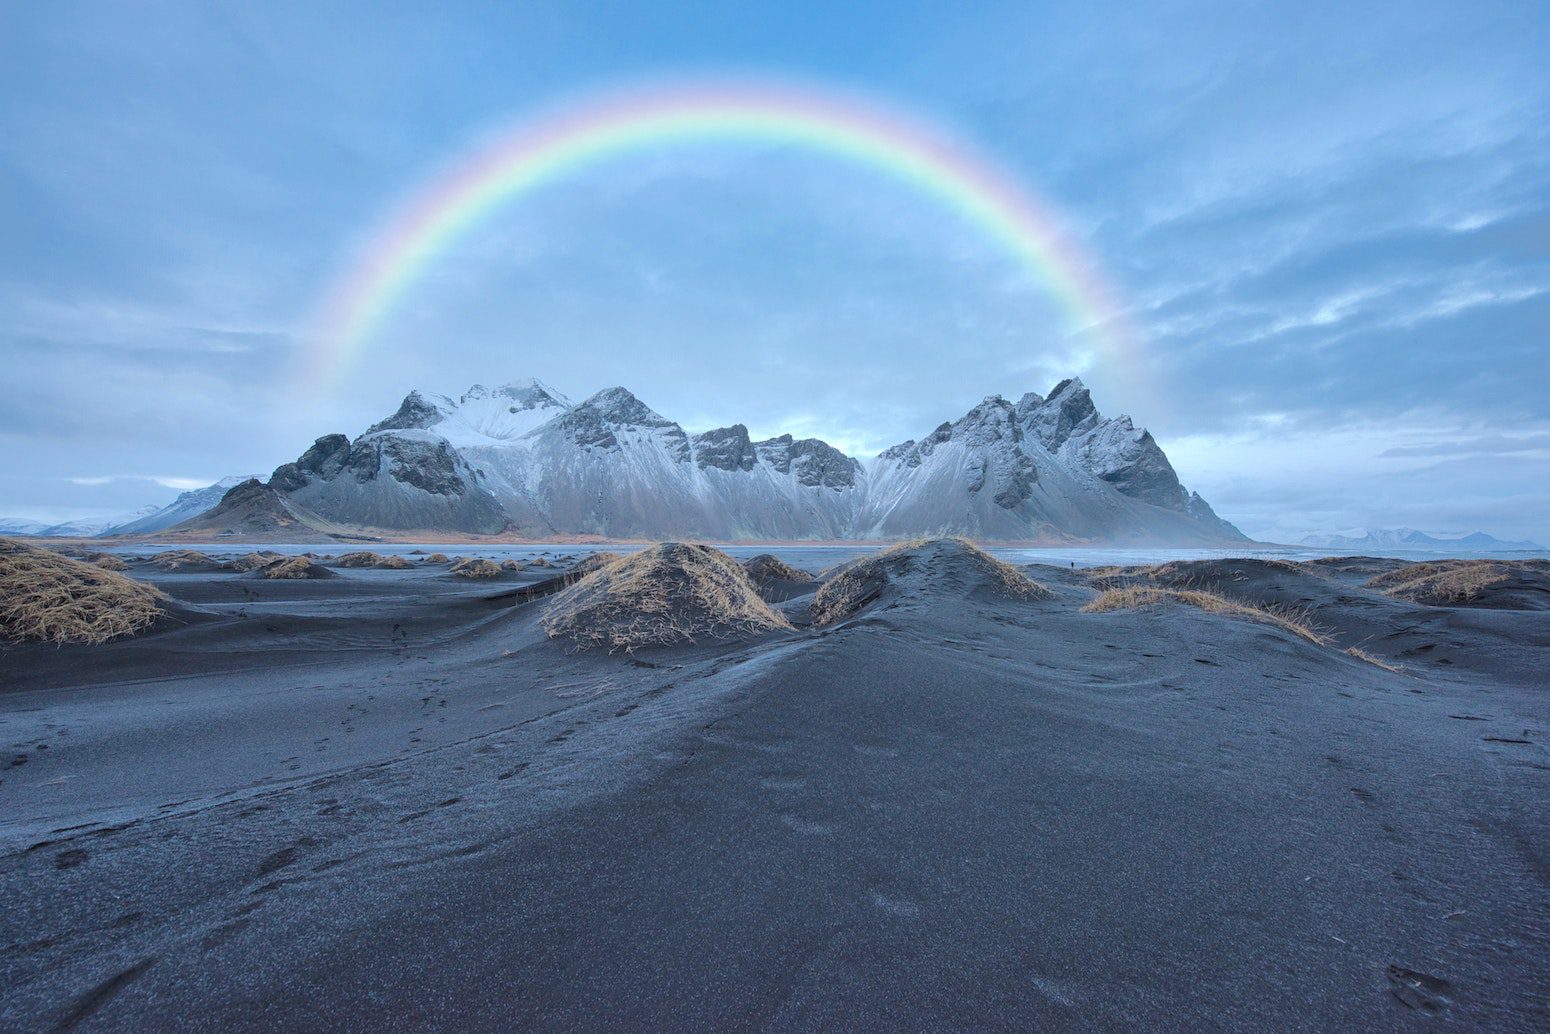 Stockbild Pexels – Evgeny Tchebotarev – Regenbogen über einer verschneiten Bergkette